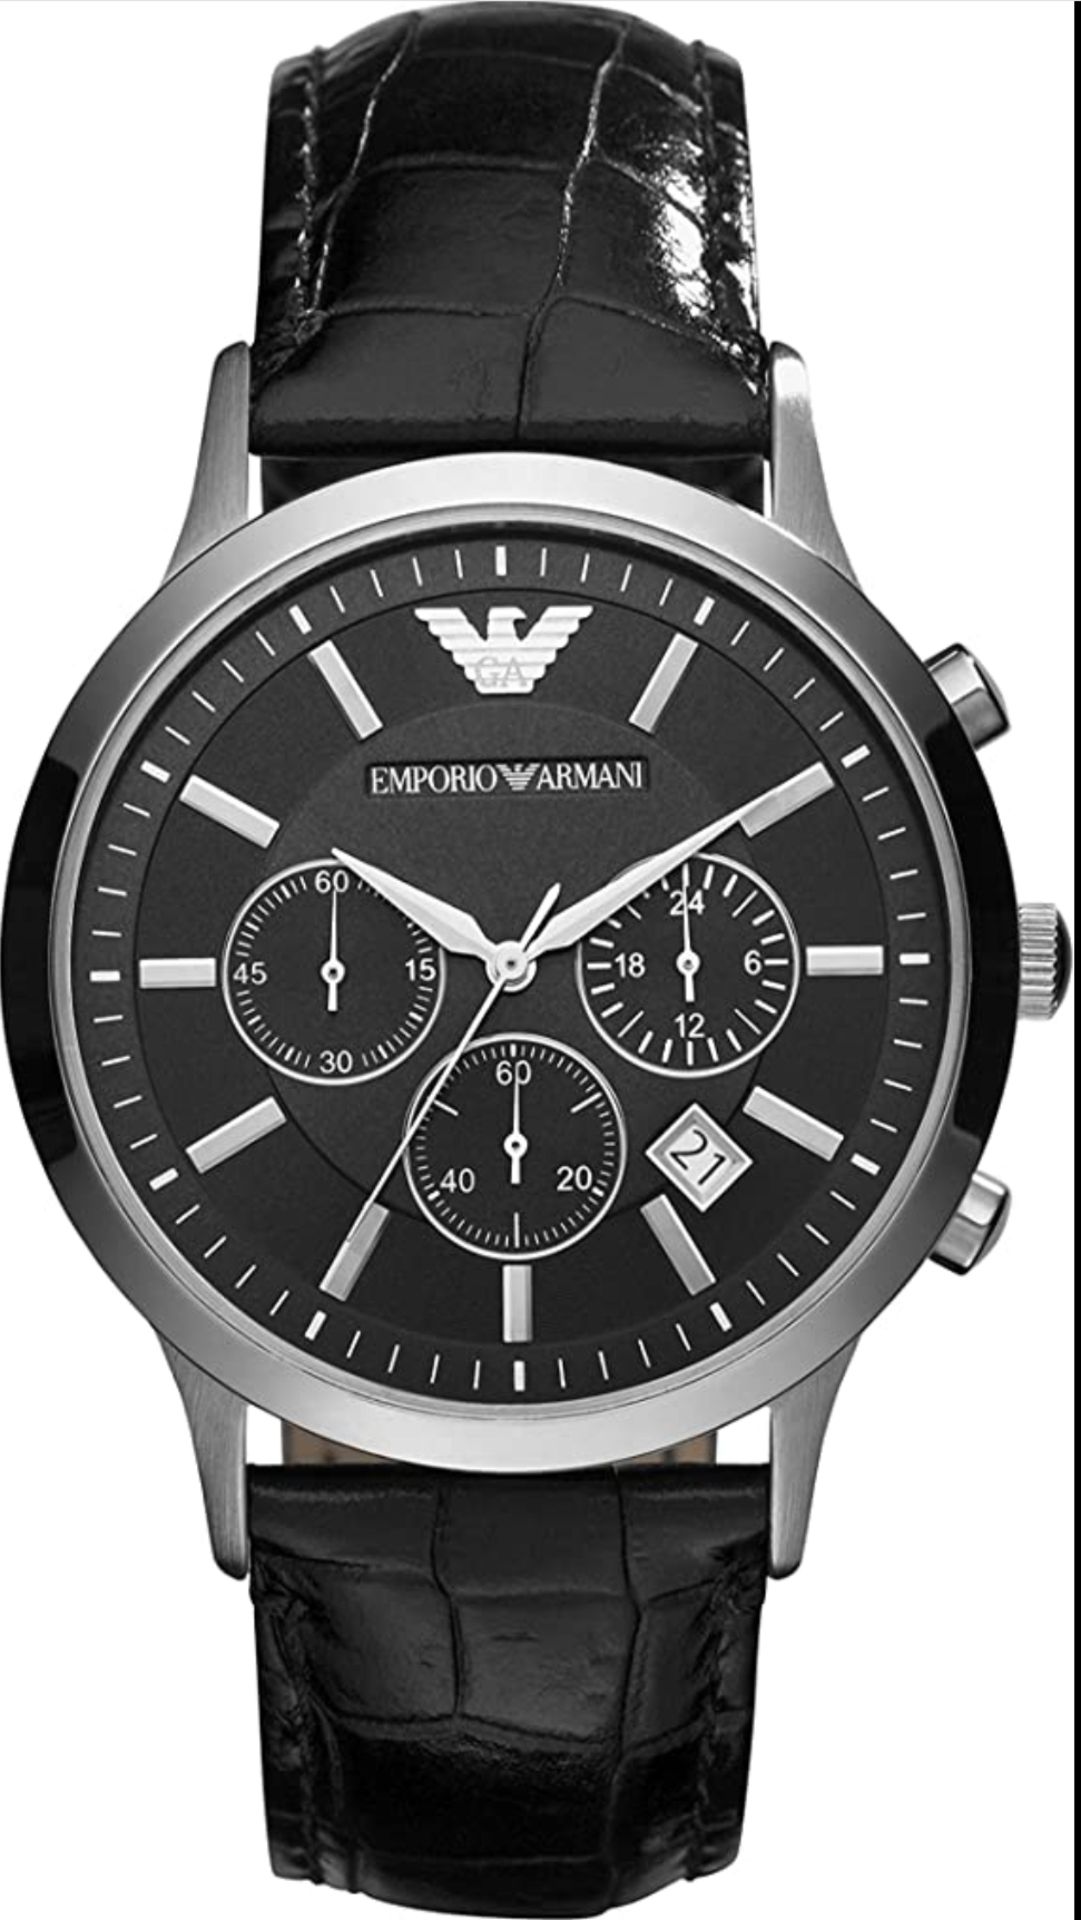 Emporio Armani AR2447 Men's Renato Black Leather Strap Chronograph Watch - Image 3 of 7